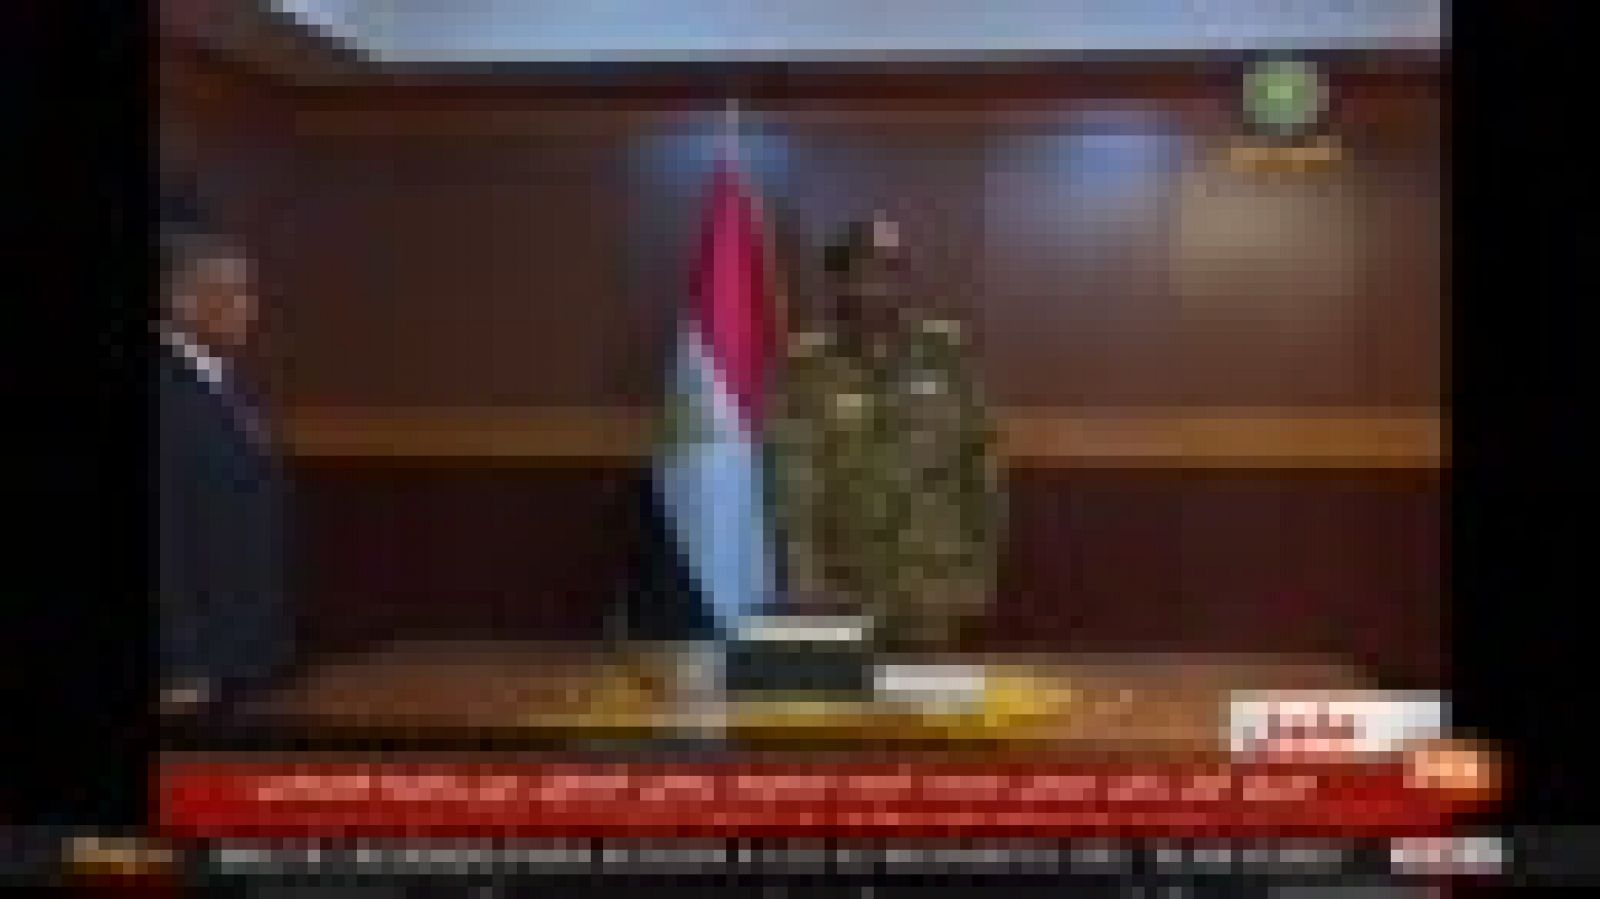 Dimite el líder de la junta militar 24 horas después de jurar su cargo y entrega el poder al general Abdelfatah al Burhan